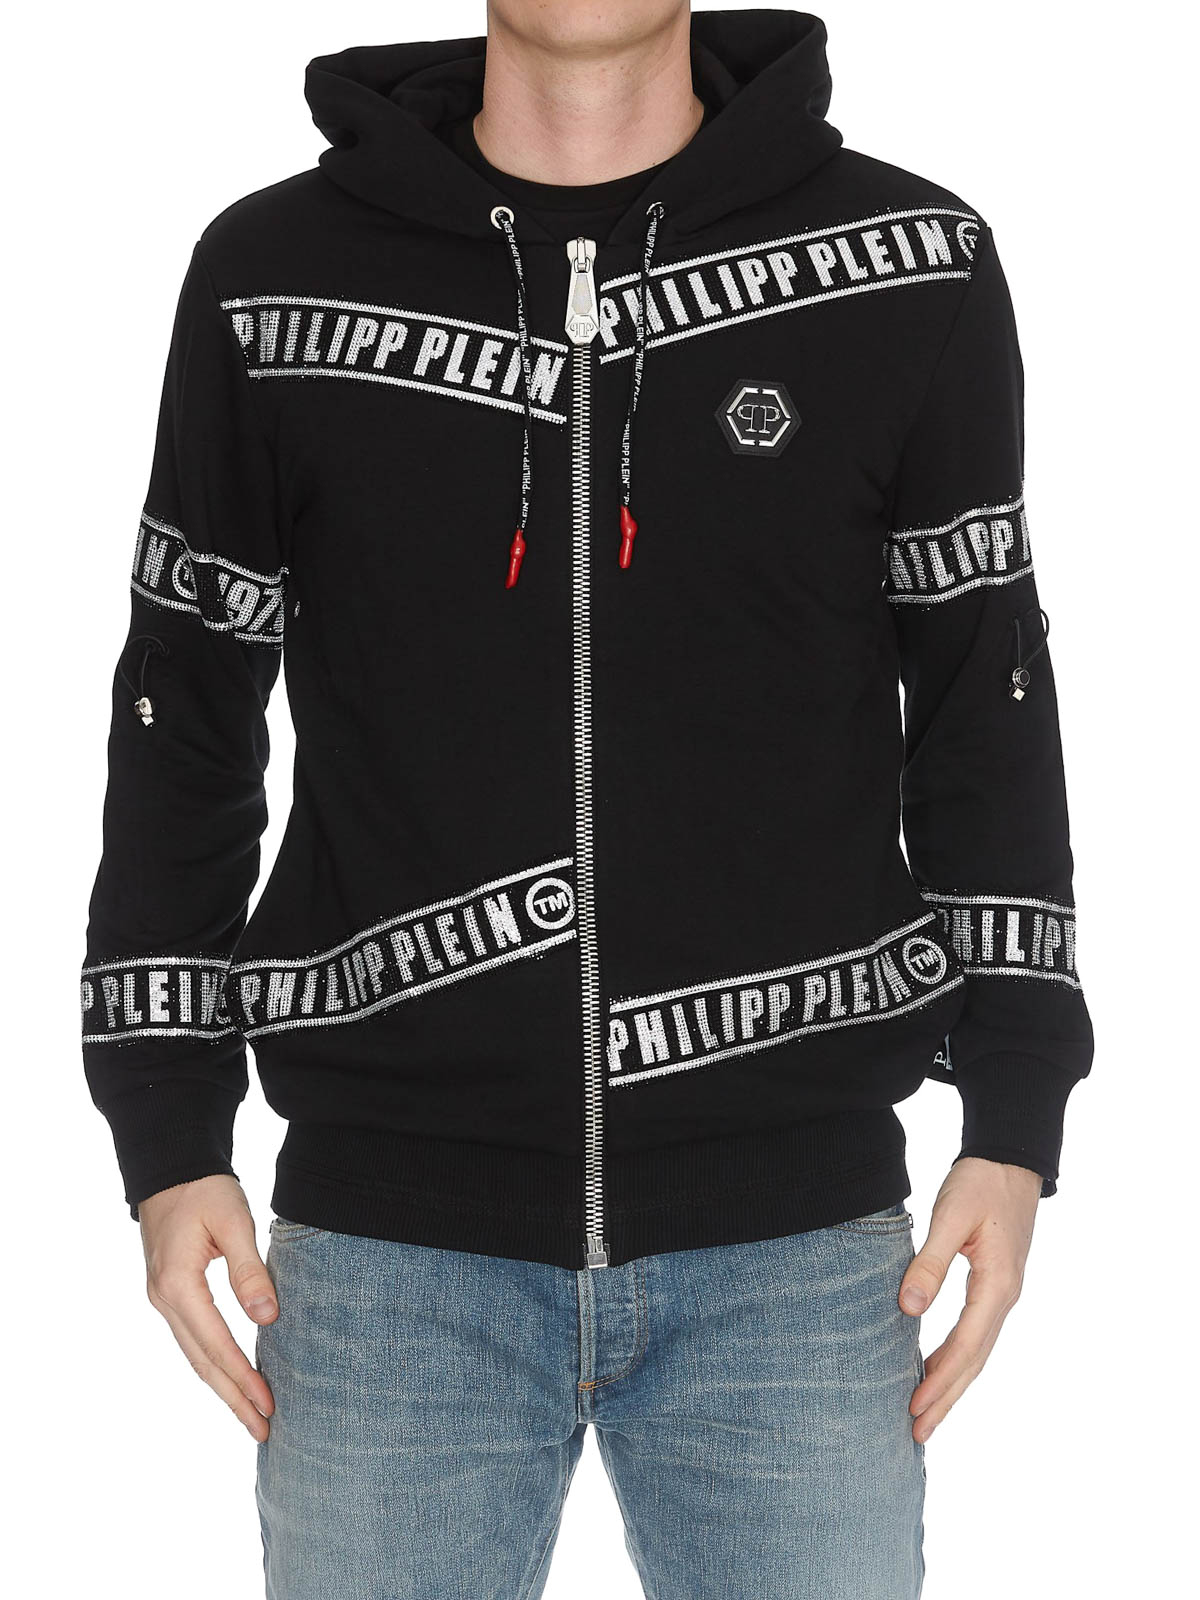 Philipp Plein Herren Pullover Herrenmode Sweatshirt Jumper Black Strick Sweater